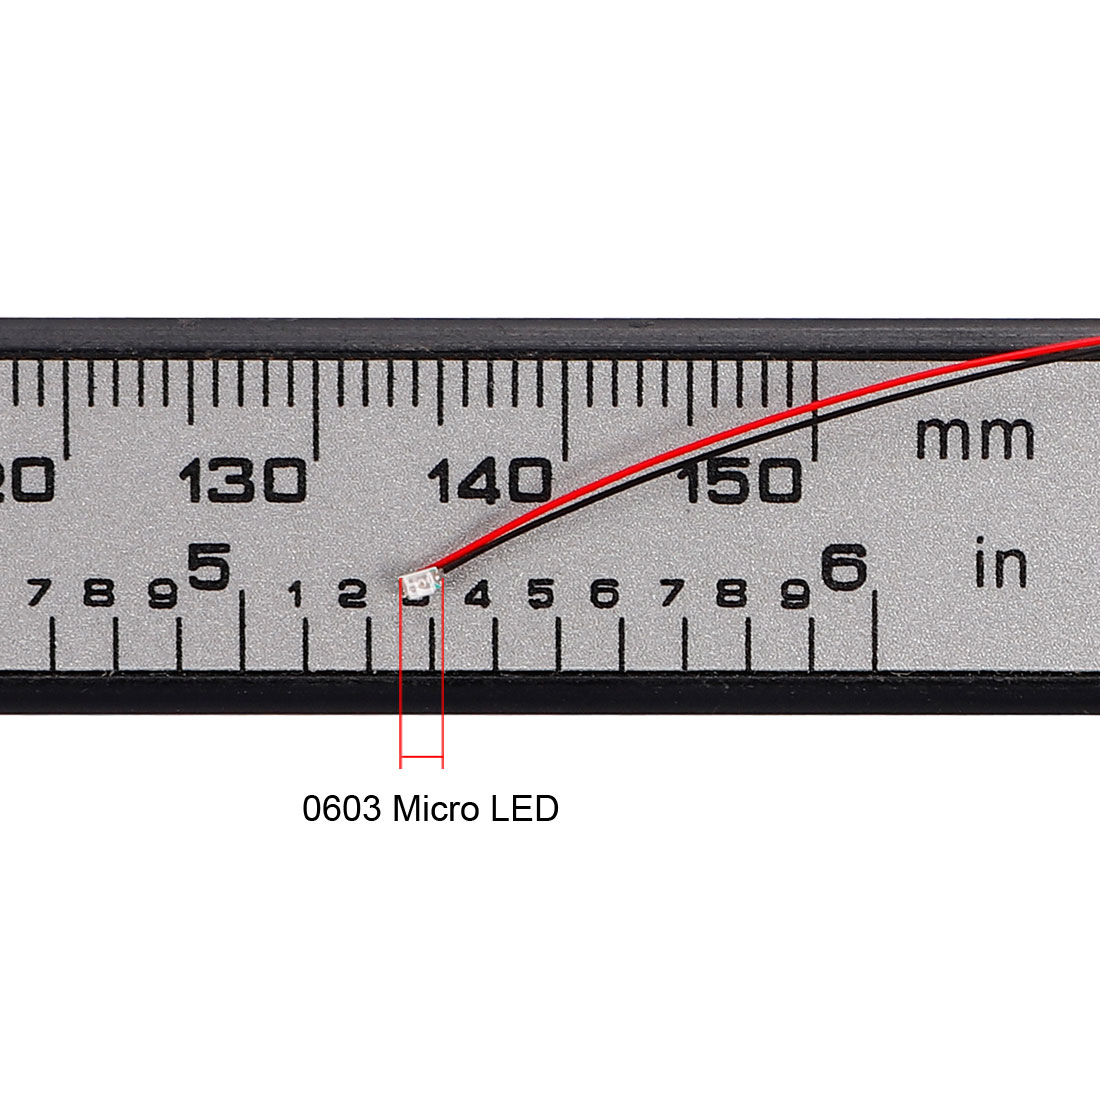 Unique Bargains 10pcs Pre-soldered Micro SMD LED Red Light Emitting Diode 0603 DC 6-18V